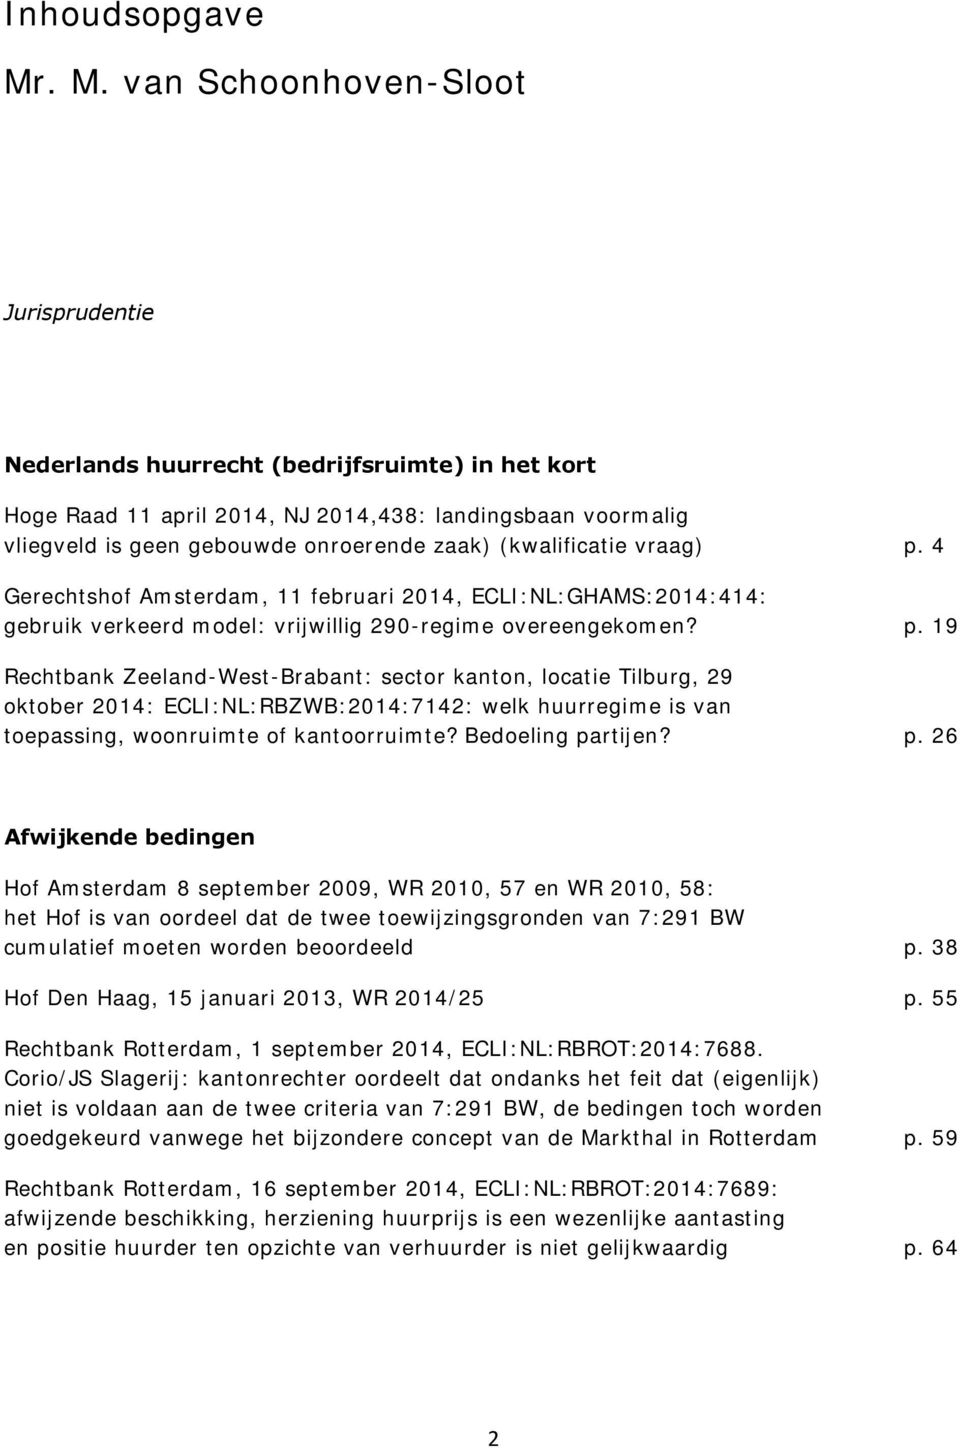 (kwalificatie vraag) p. 4 Gerechtshof Amsterdam, 11 februari 2014, ECLI:NL:GHAMS:2014:414: gebruik verkeerd model: vrijwillig 290-regime overeengekomen? p. 19 Rechtbank Zeeland-West-Brabant: sector kanton, locatie Tilburg, 29 oktober 2014: ECLI:NL:RBZWB:2014:7142: welk huurregime is van toepassing, woonruimte of kantoorruimte?